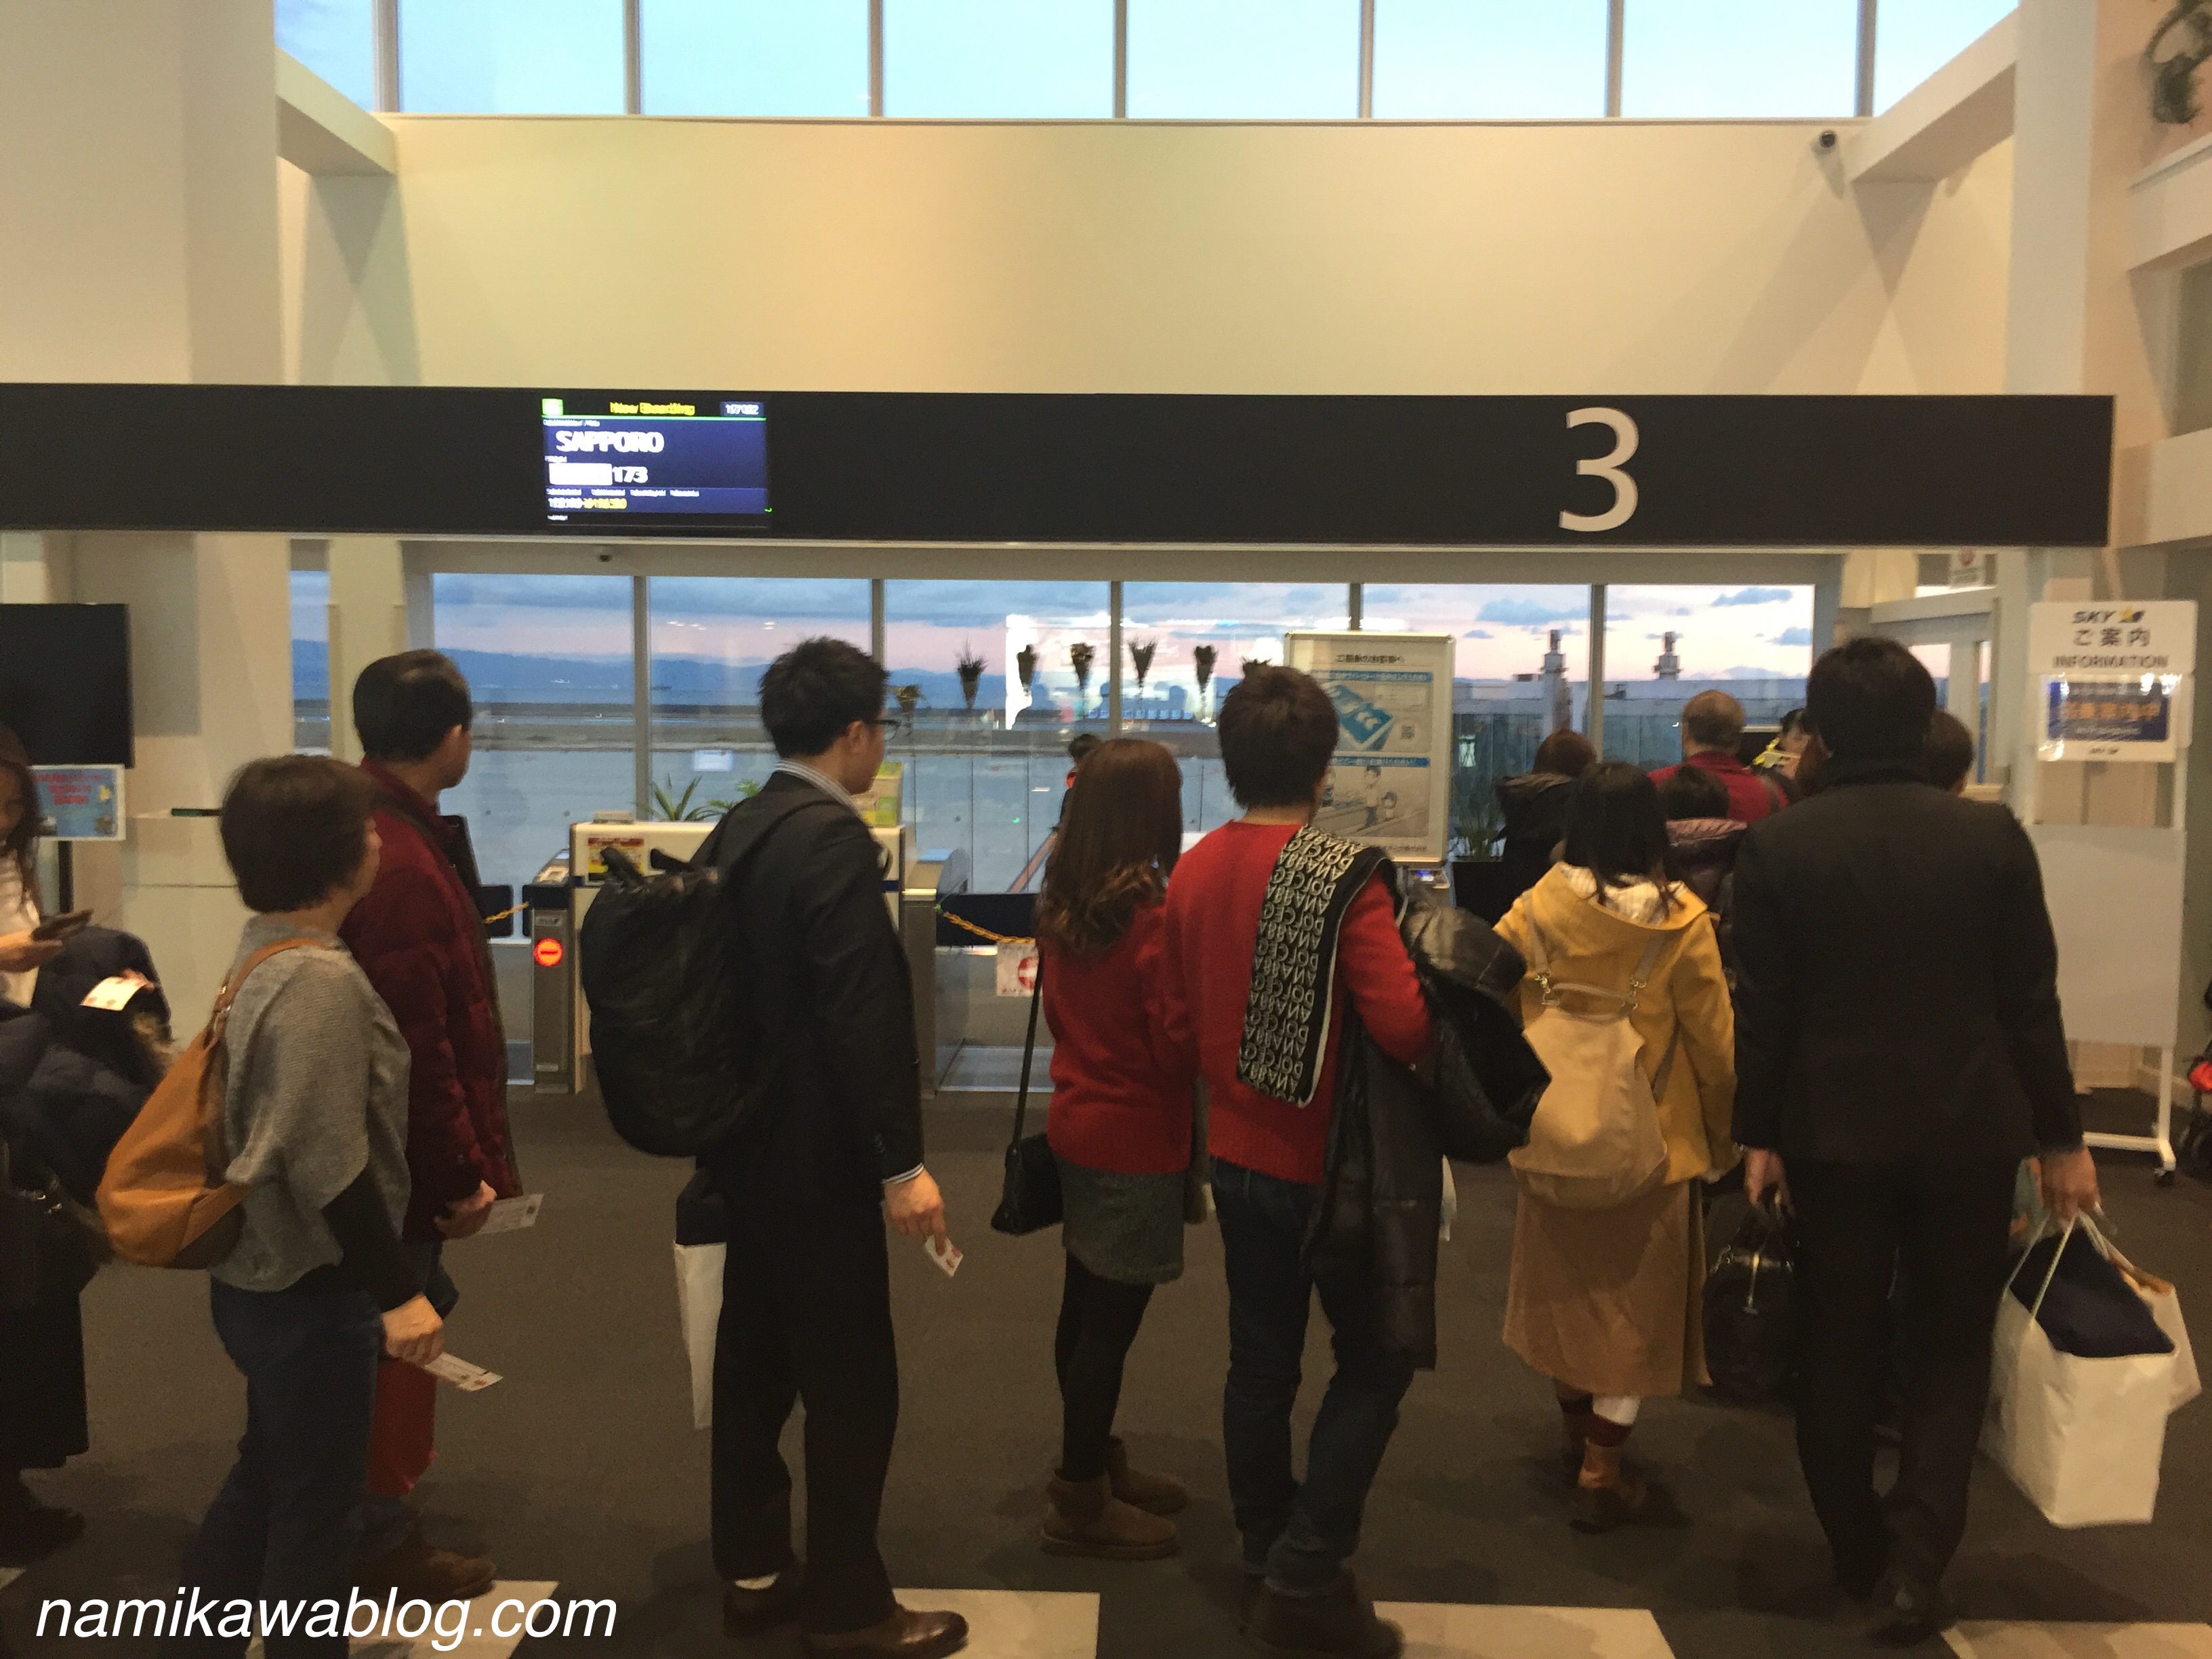 神戸空港3番搭乗口の搭乗開始